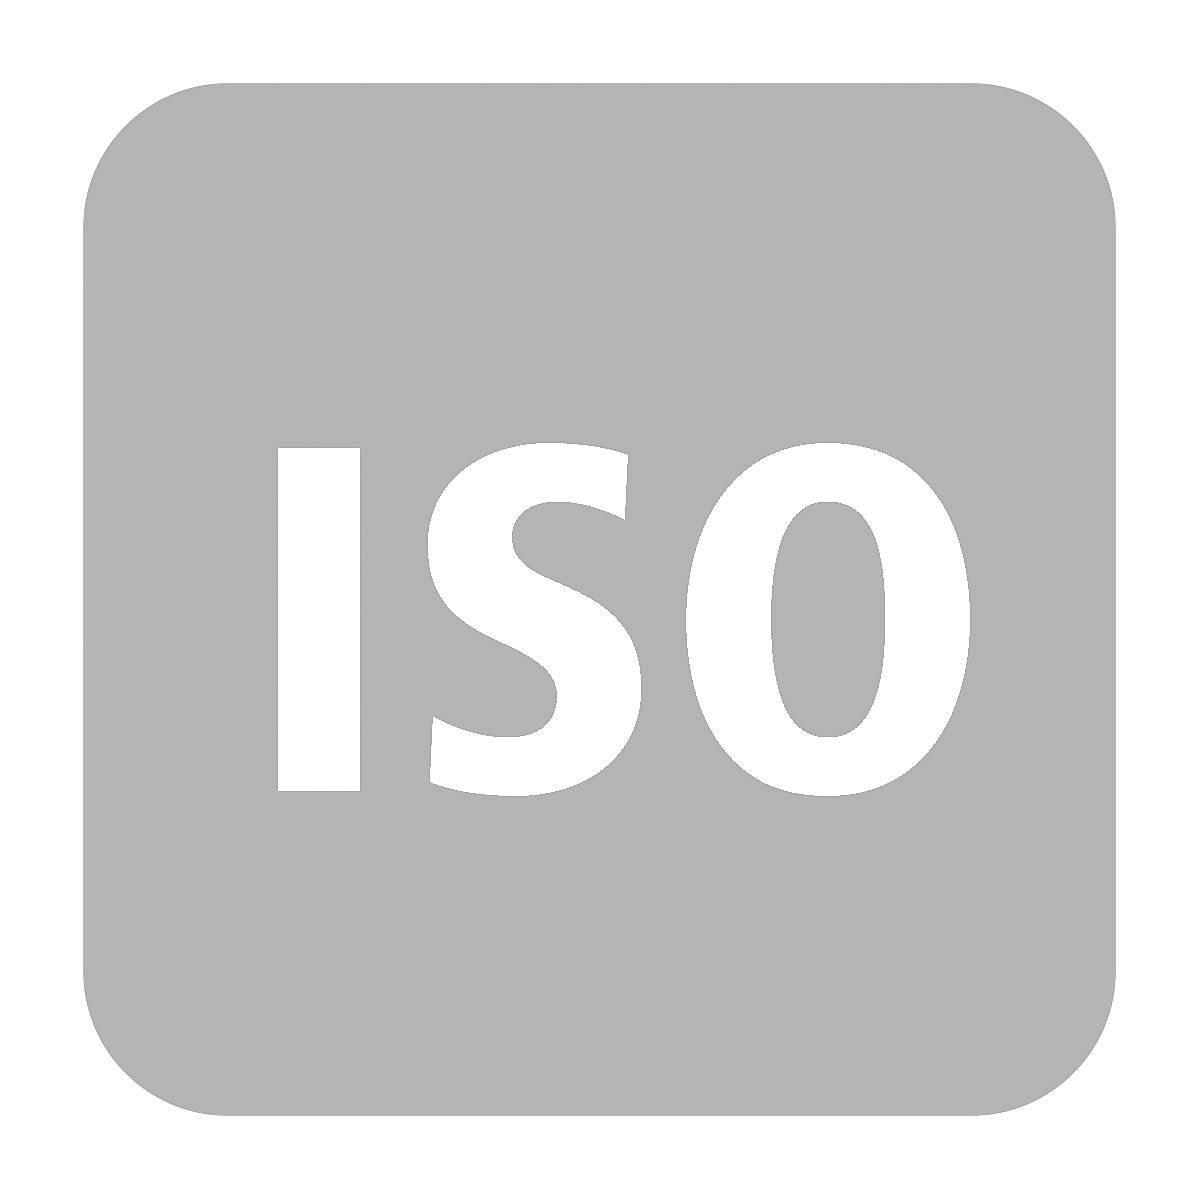 Recargo modelo ISO